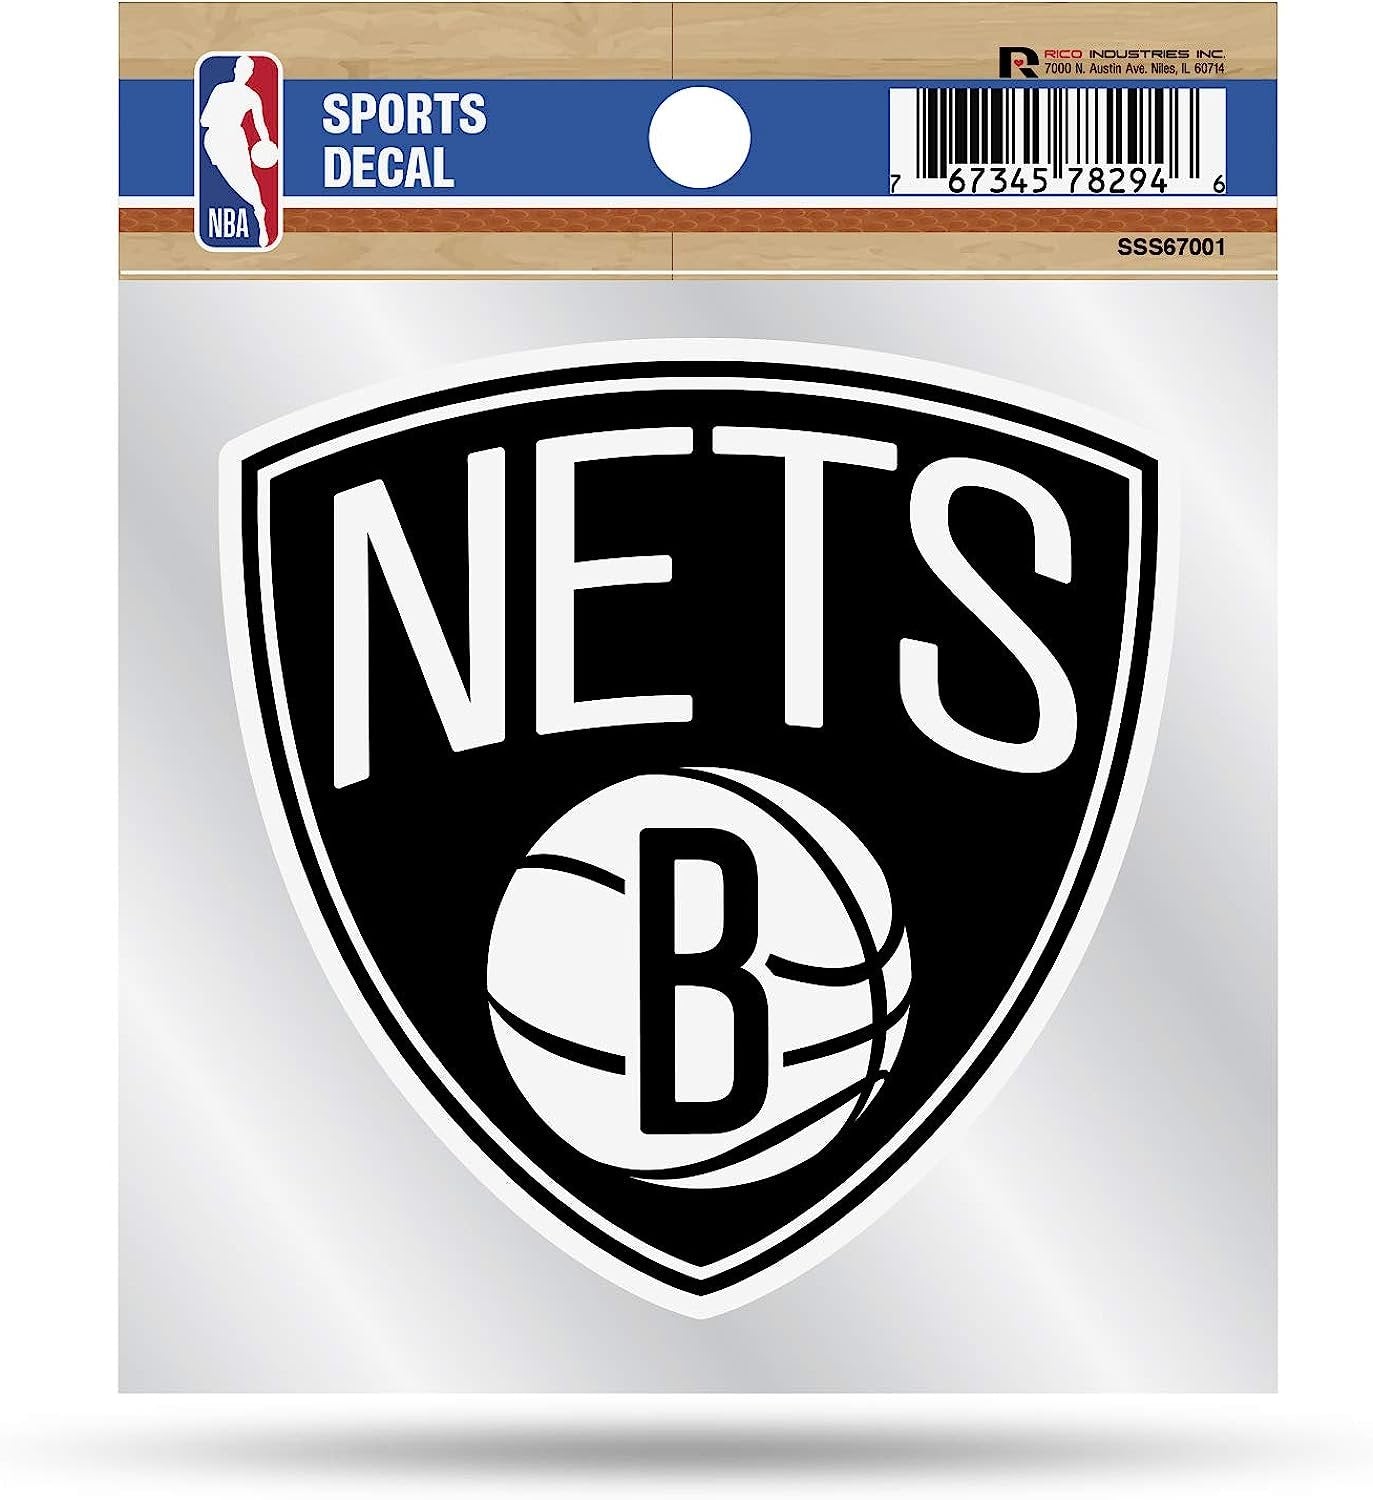 Brooklyn Nets 4x4 Die Cut Inch Decal Sticker Flat Vinyl, Primary Logo, Clear Backing